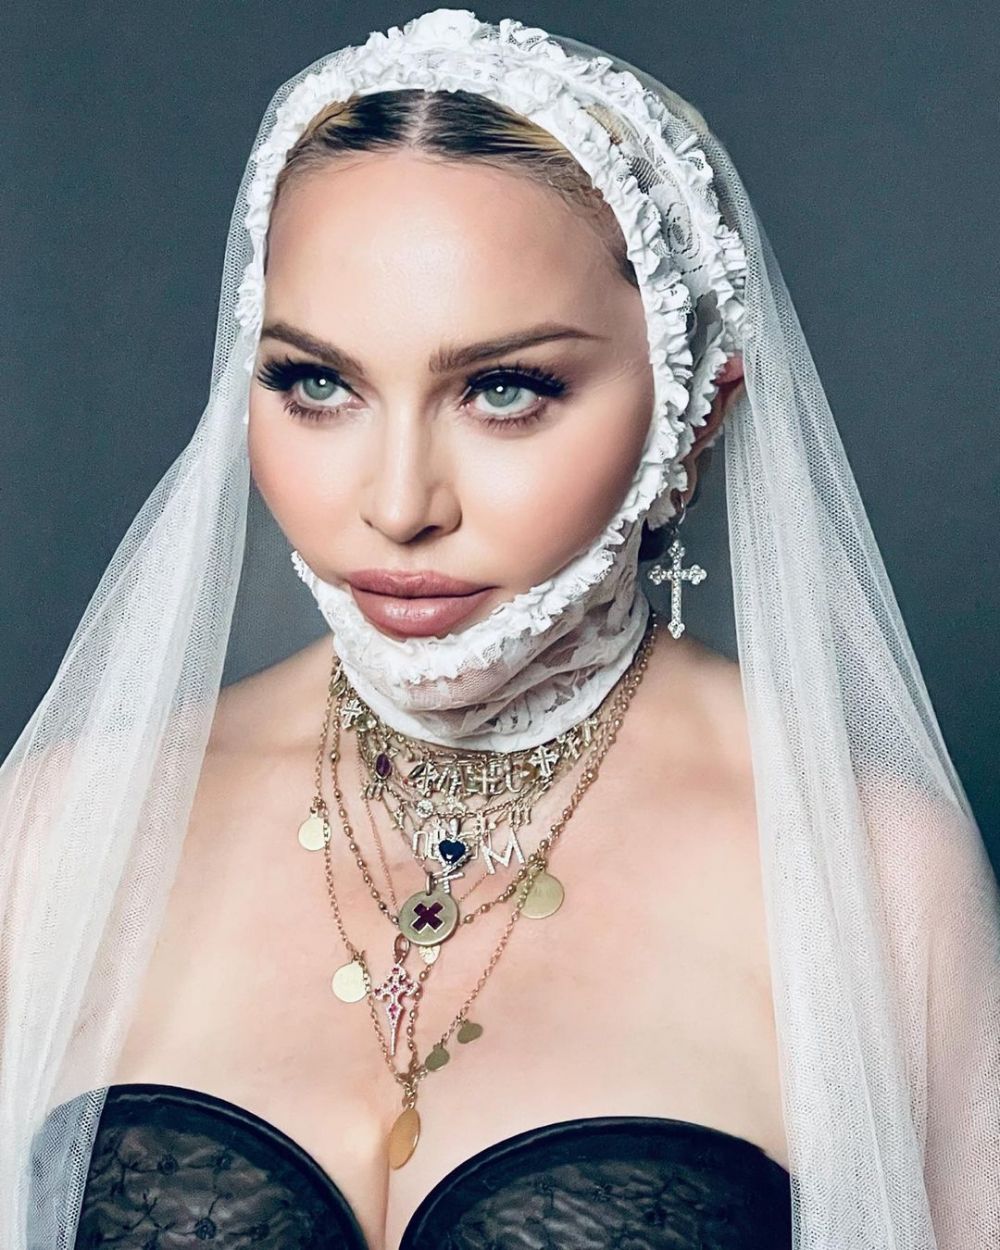 Madonna și propunerea ireală de 20 de milioane de dolari! Ziua în care l-a refuzat pe Jordan pentru coechipierul său_8